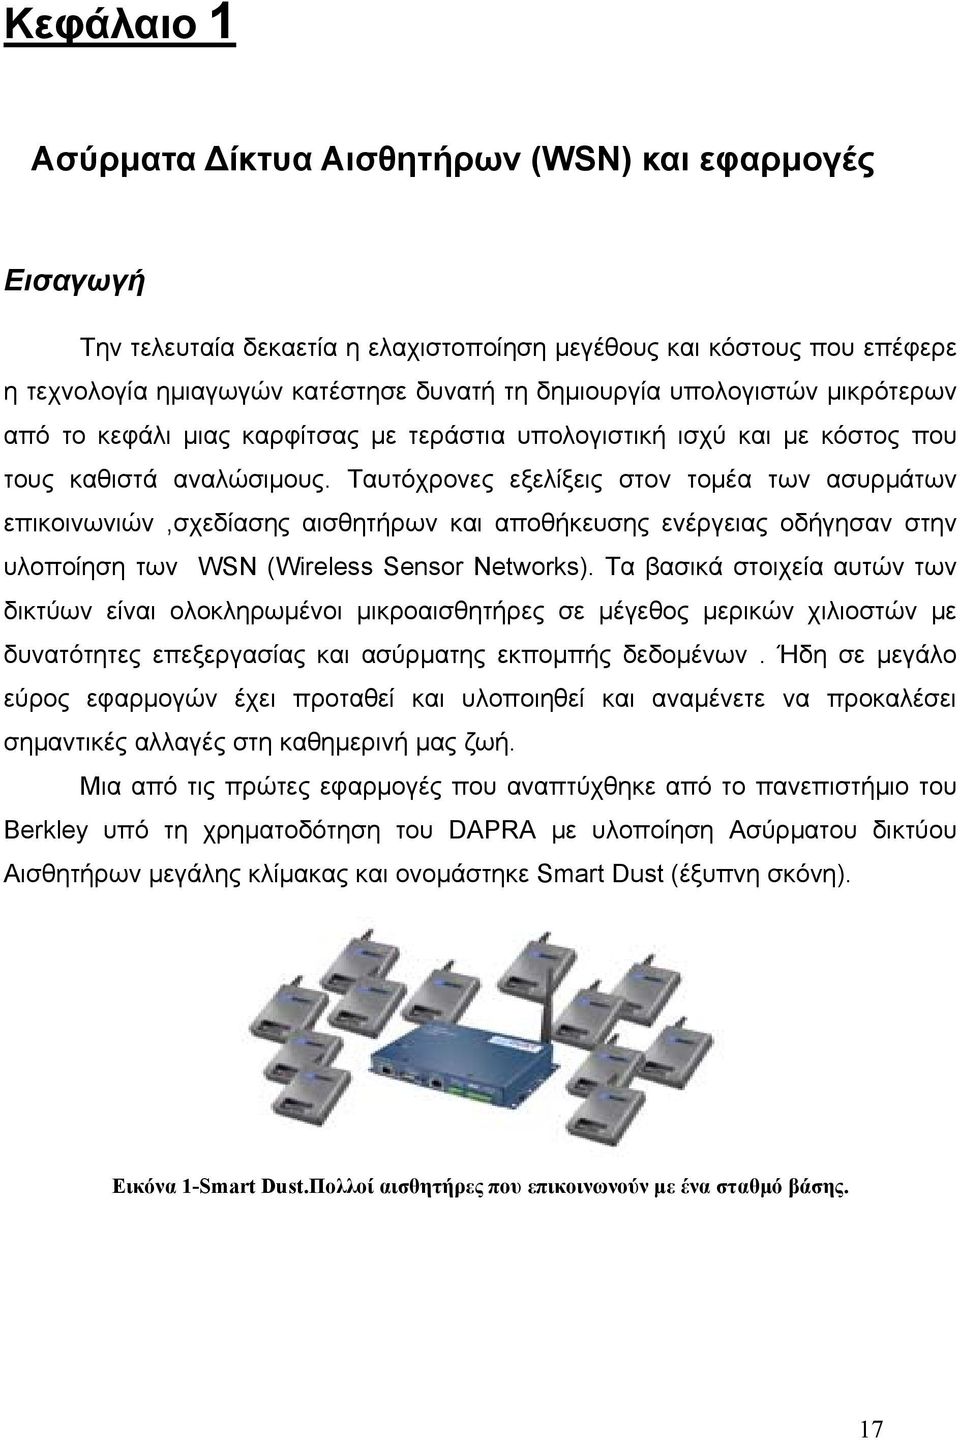 Ταυτόχρονες εξελίξεις στον τομέα των ασυρμάτων επικοινωνιών,σχεδίασης αισθητήρων και αποθήκευσης ενέργειας οδήγησαν στην υλοποίηση των WSN (Wireless Sensor Networks).